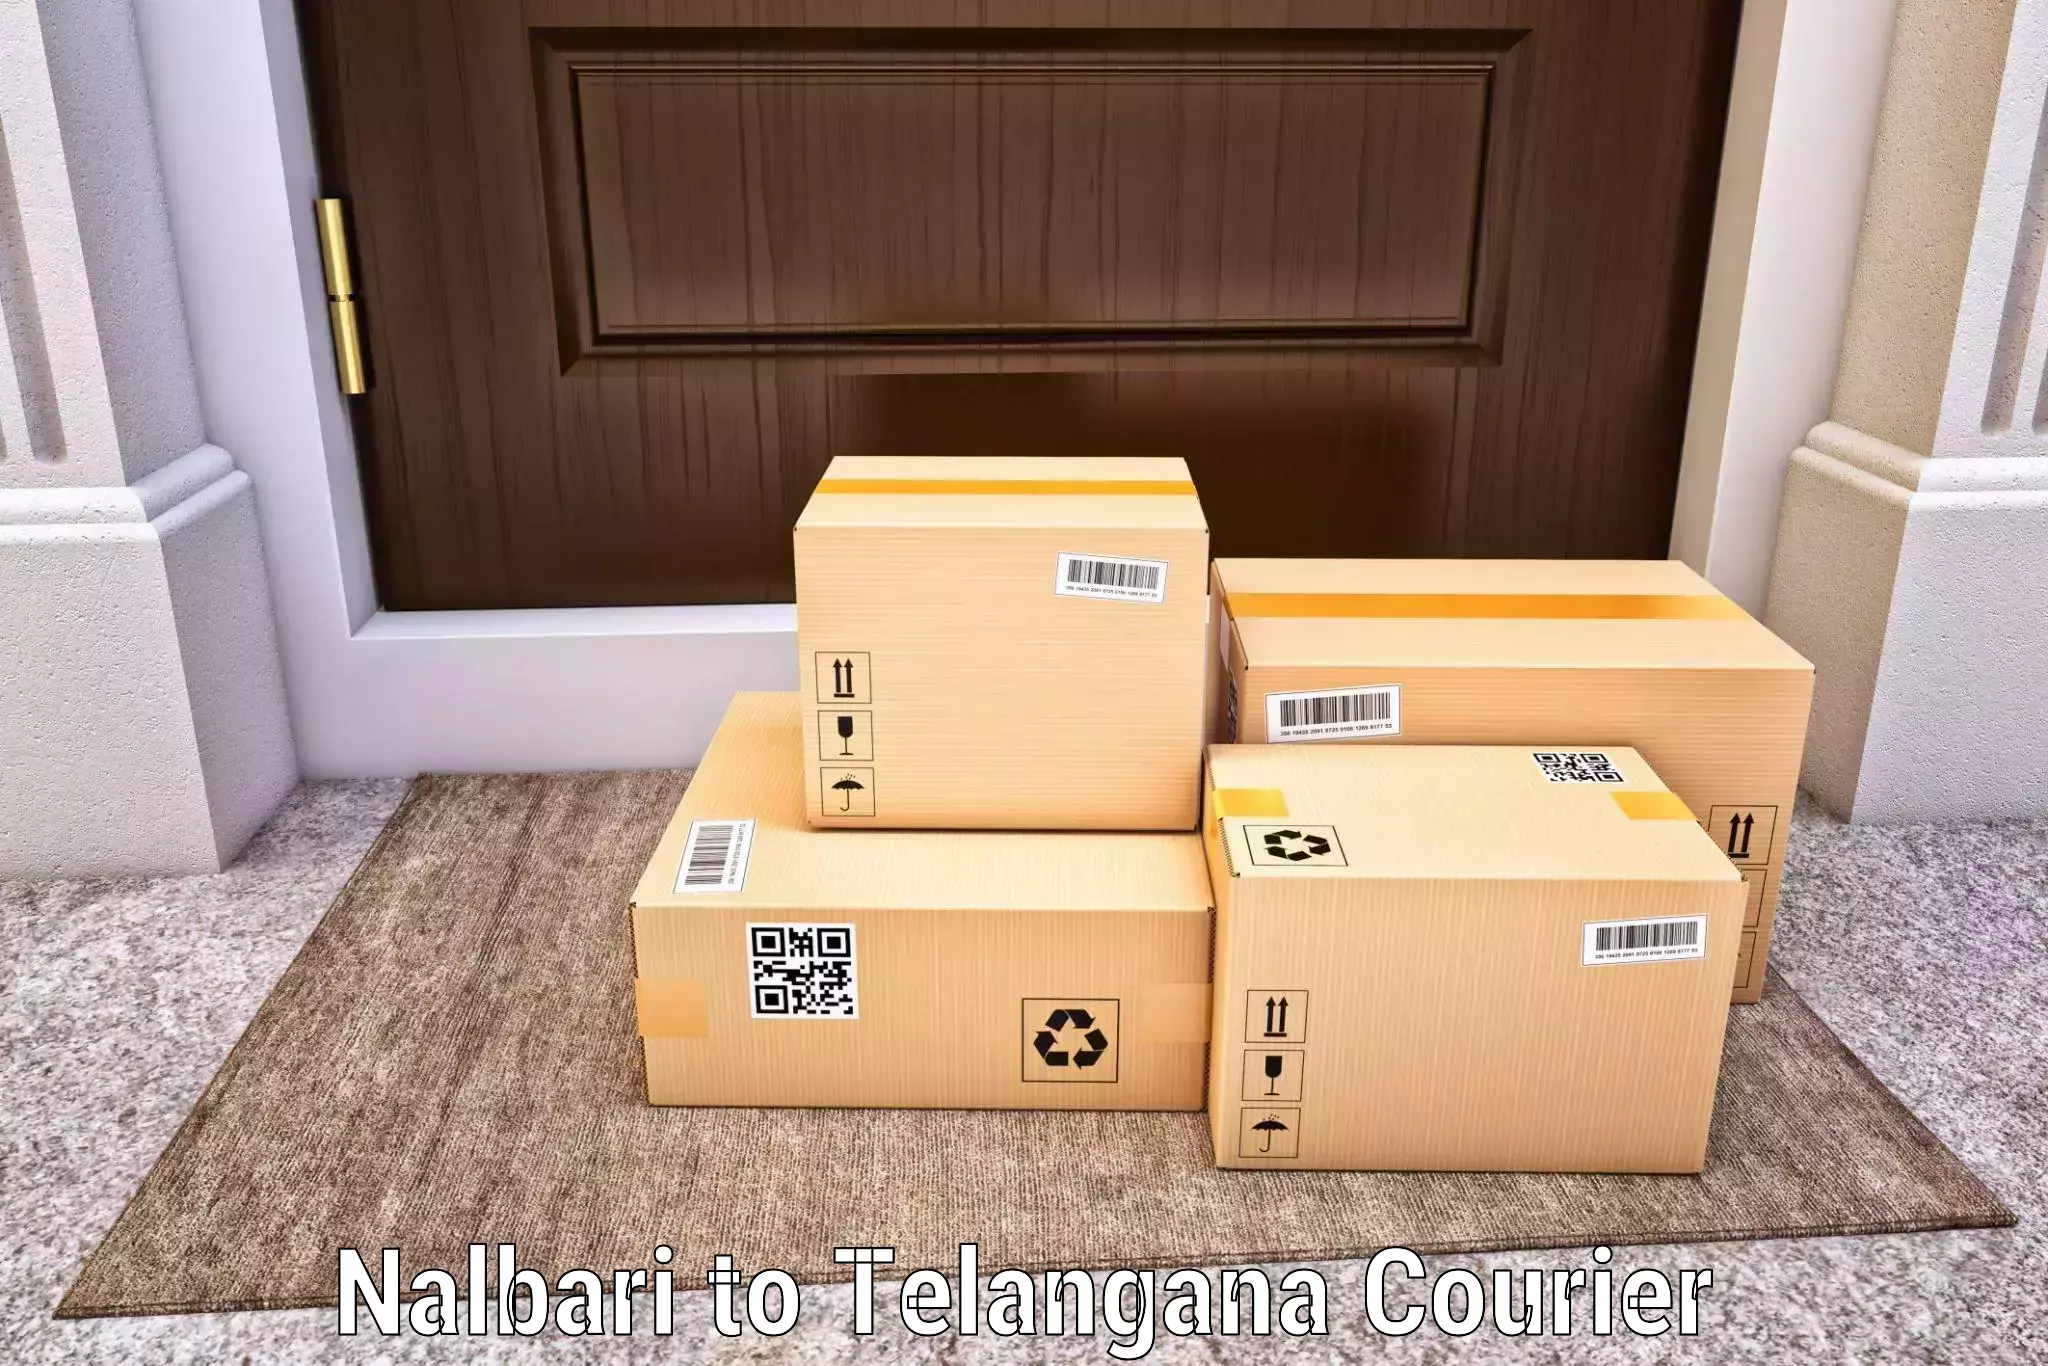 24/7 shipping services in Nalbari to Nereducharla